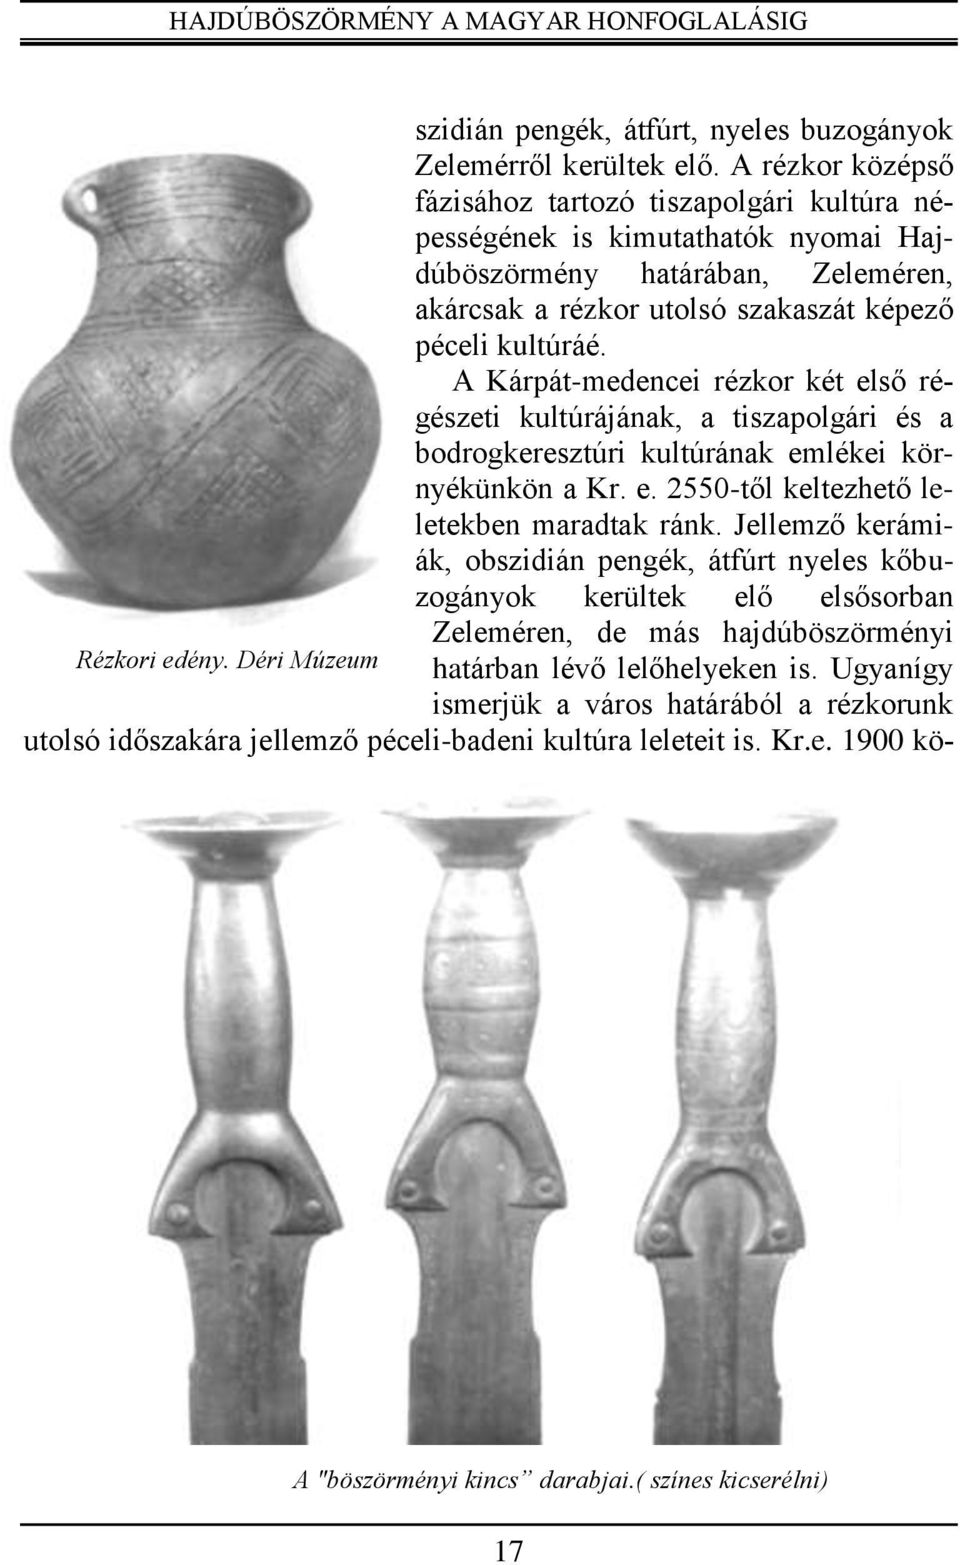 A Kárpát-medencei rézkor két első régészeti kultúrájának, a tiszapolgári és a bodrogkeresztúri kultúrának emlékei környékünkön a Kr. e. 2550-től keltezhető leletekben maradtak ránk.